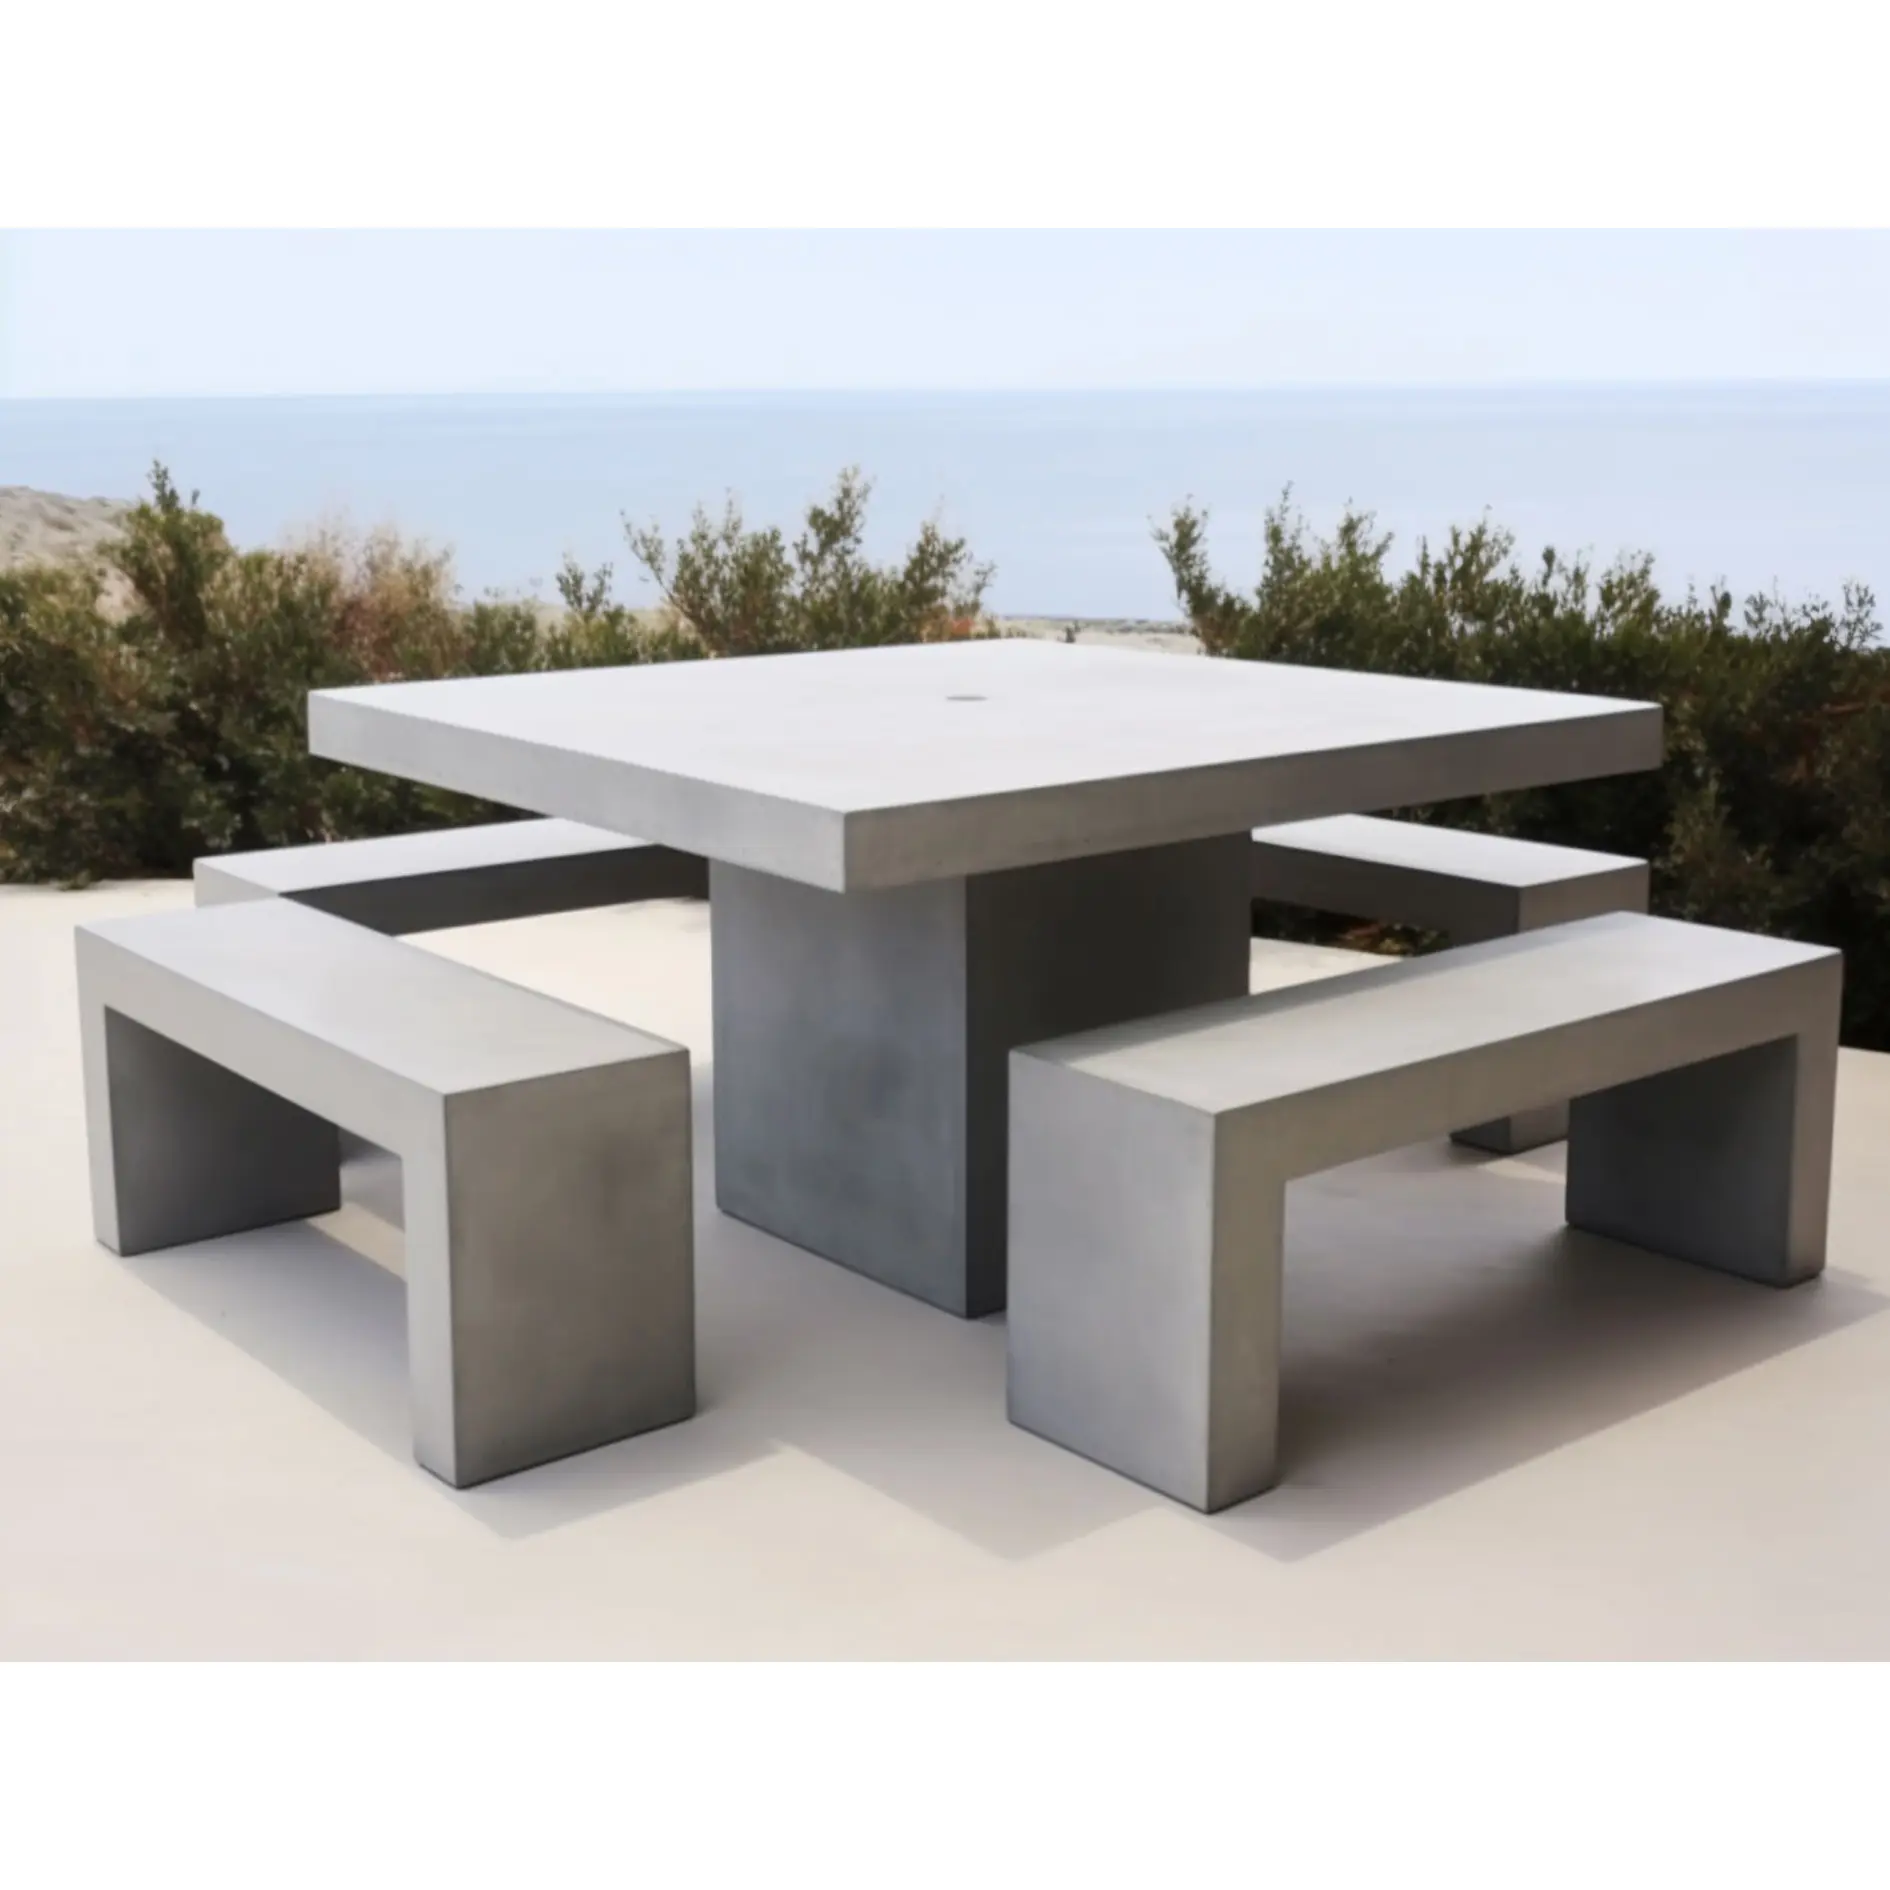 gartenmöbel, individuelle formen, fiberglas, grundiertes beton, tischsets, tisch & stühle für den parkplatz